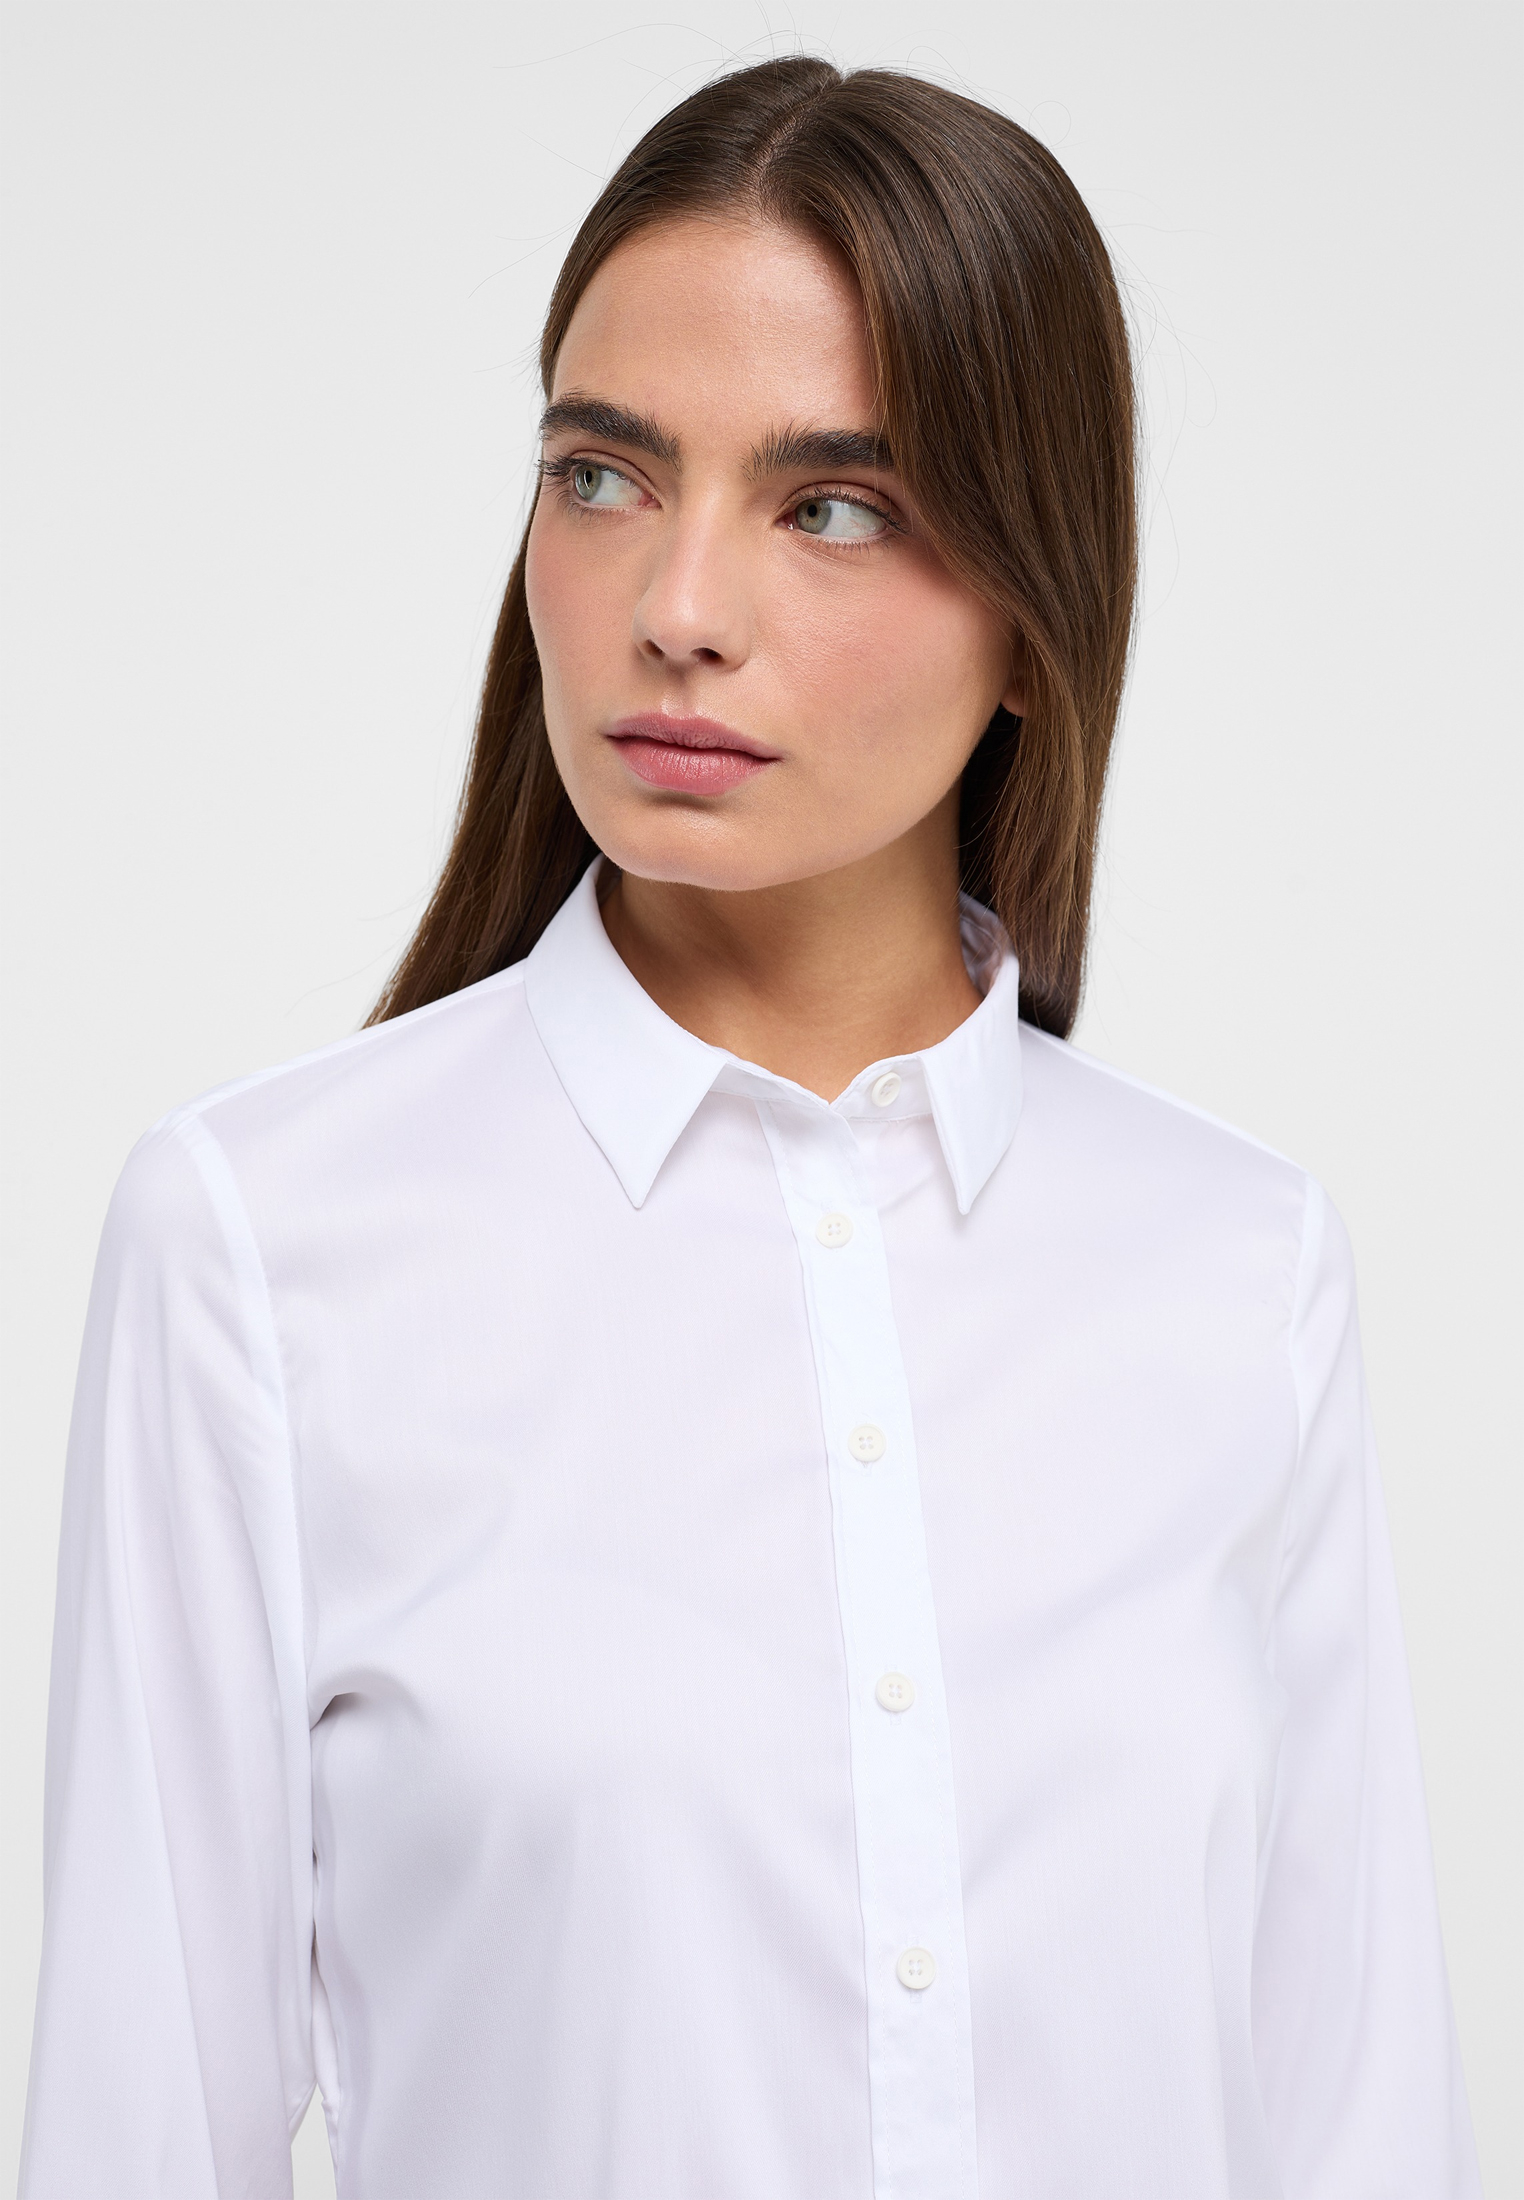 Performance Shirt Bluse in weiß unifarben | weiß | Langarm | 40 ...